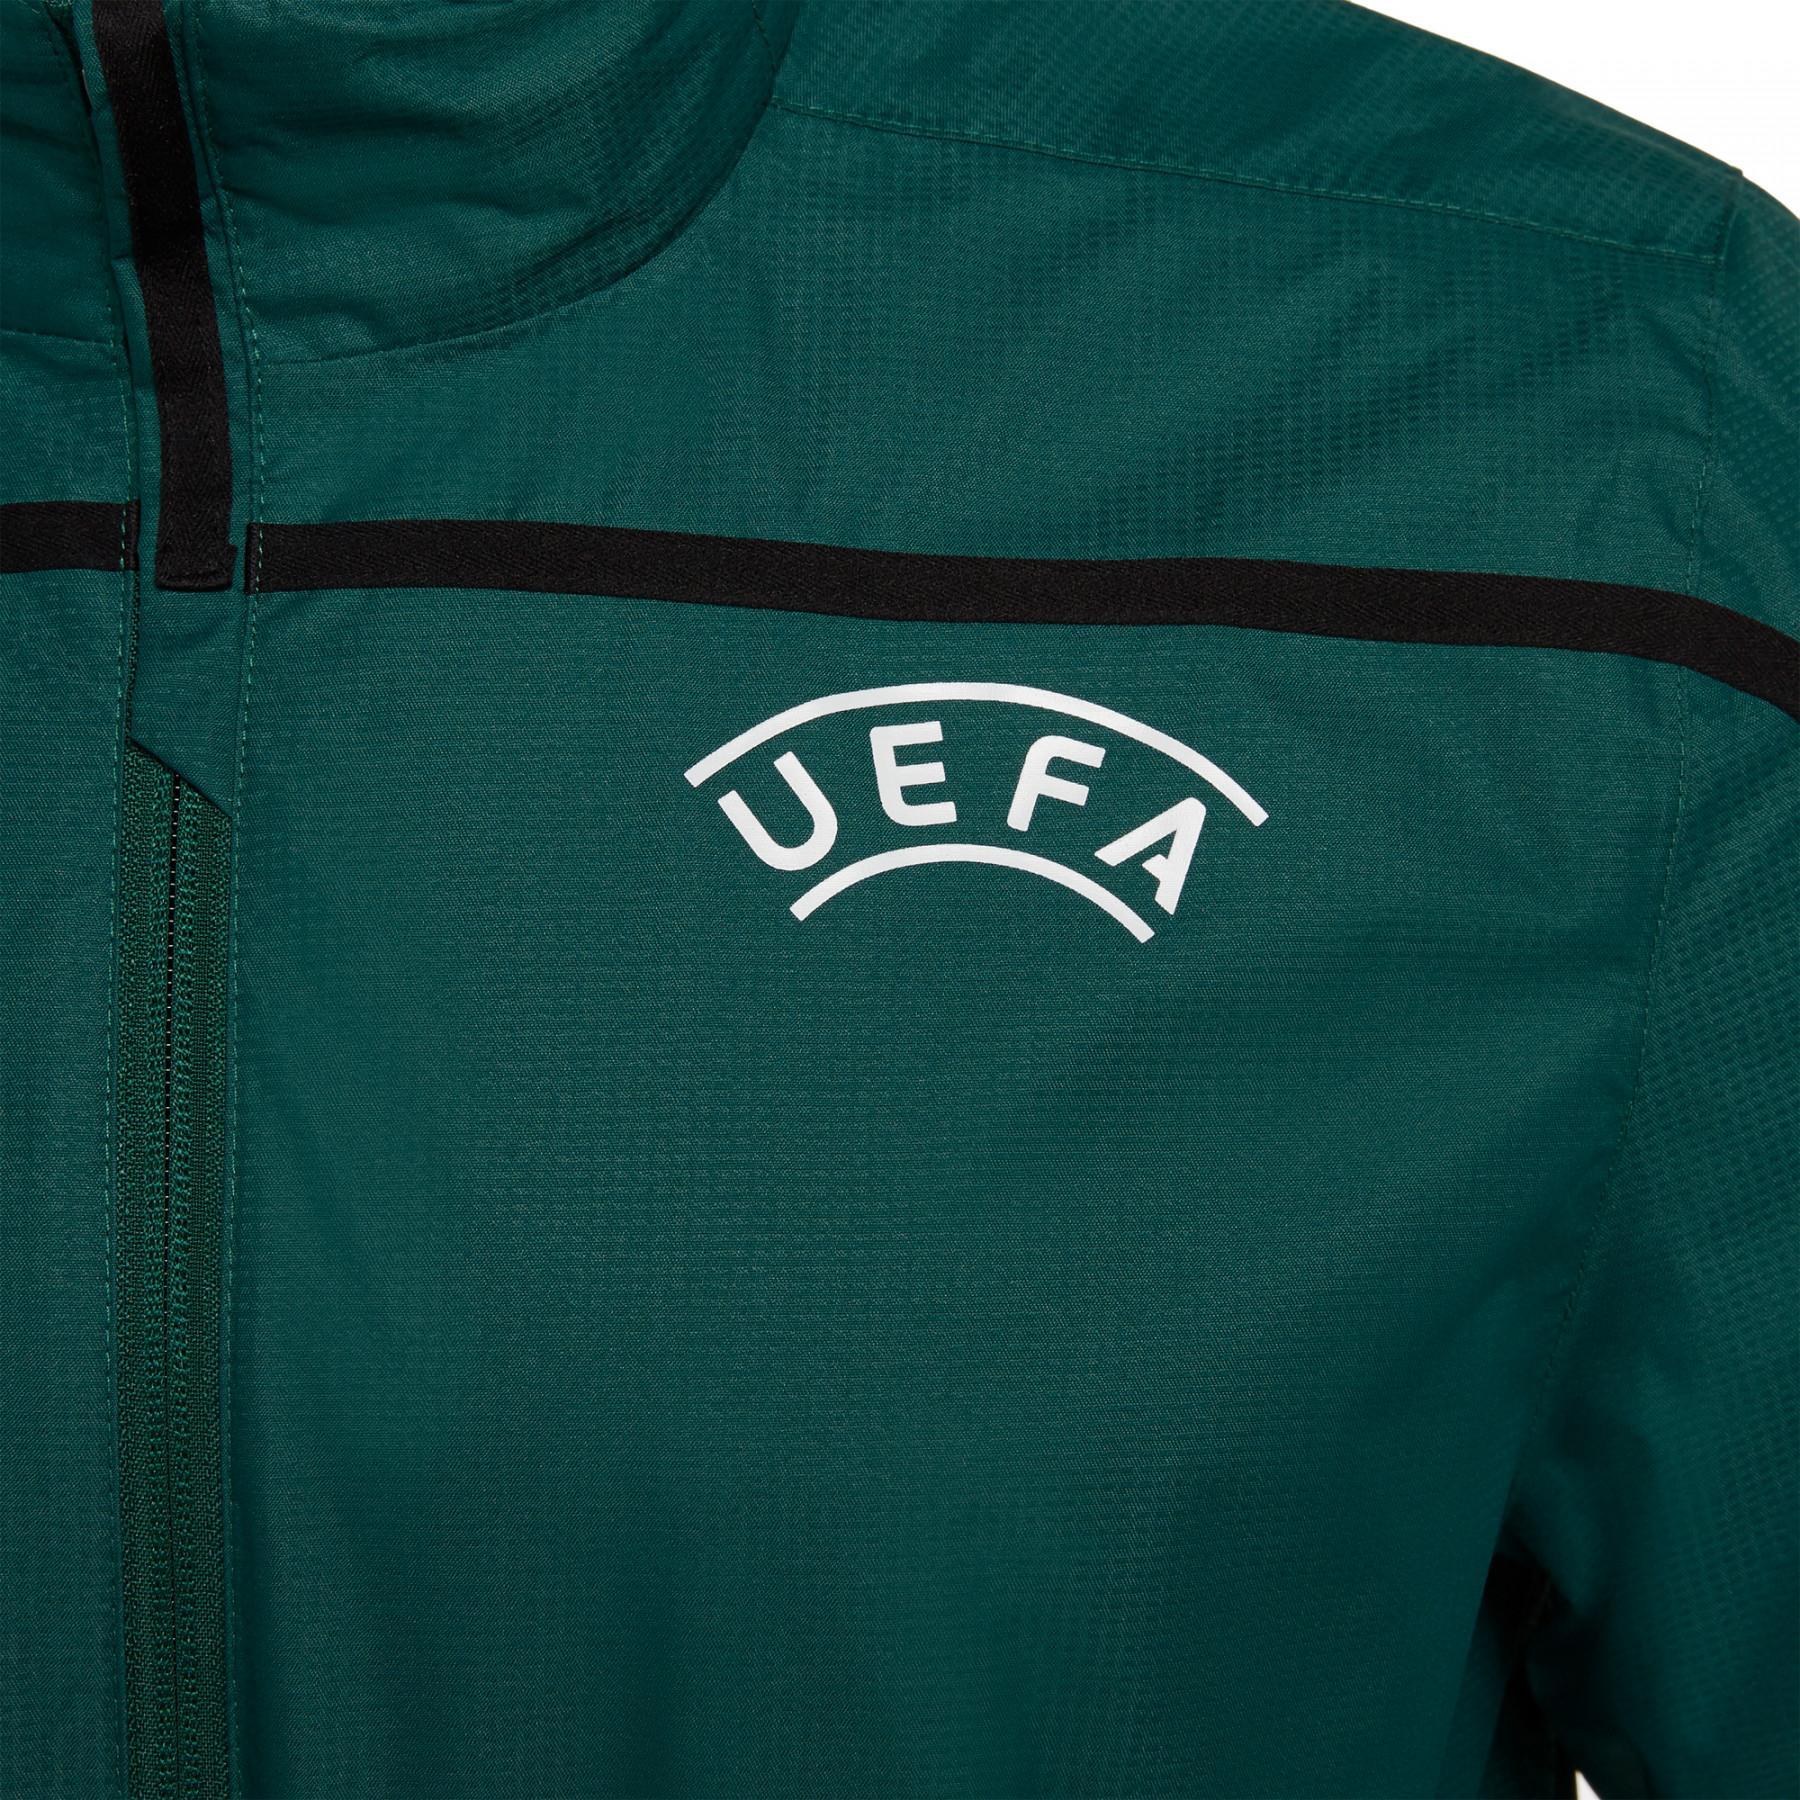 Árbitro de la chaqueta cortavientos Macron UEFA 2019